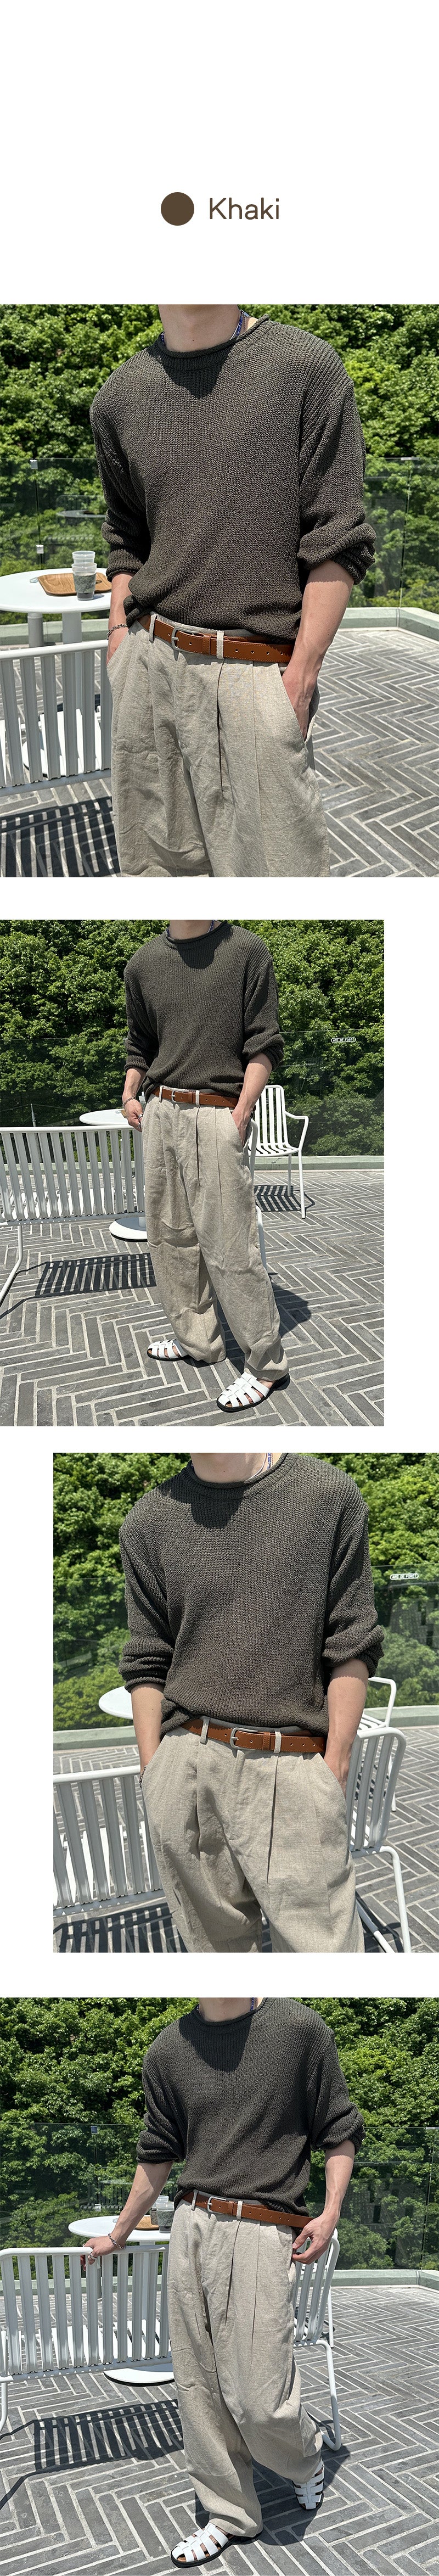 [S/S] Hazzi boucle linen round neck knit(4color)